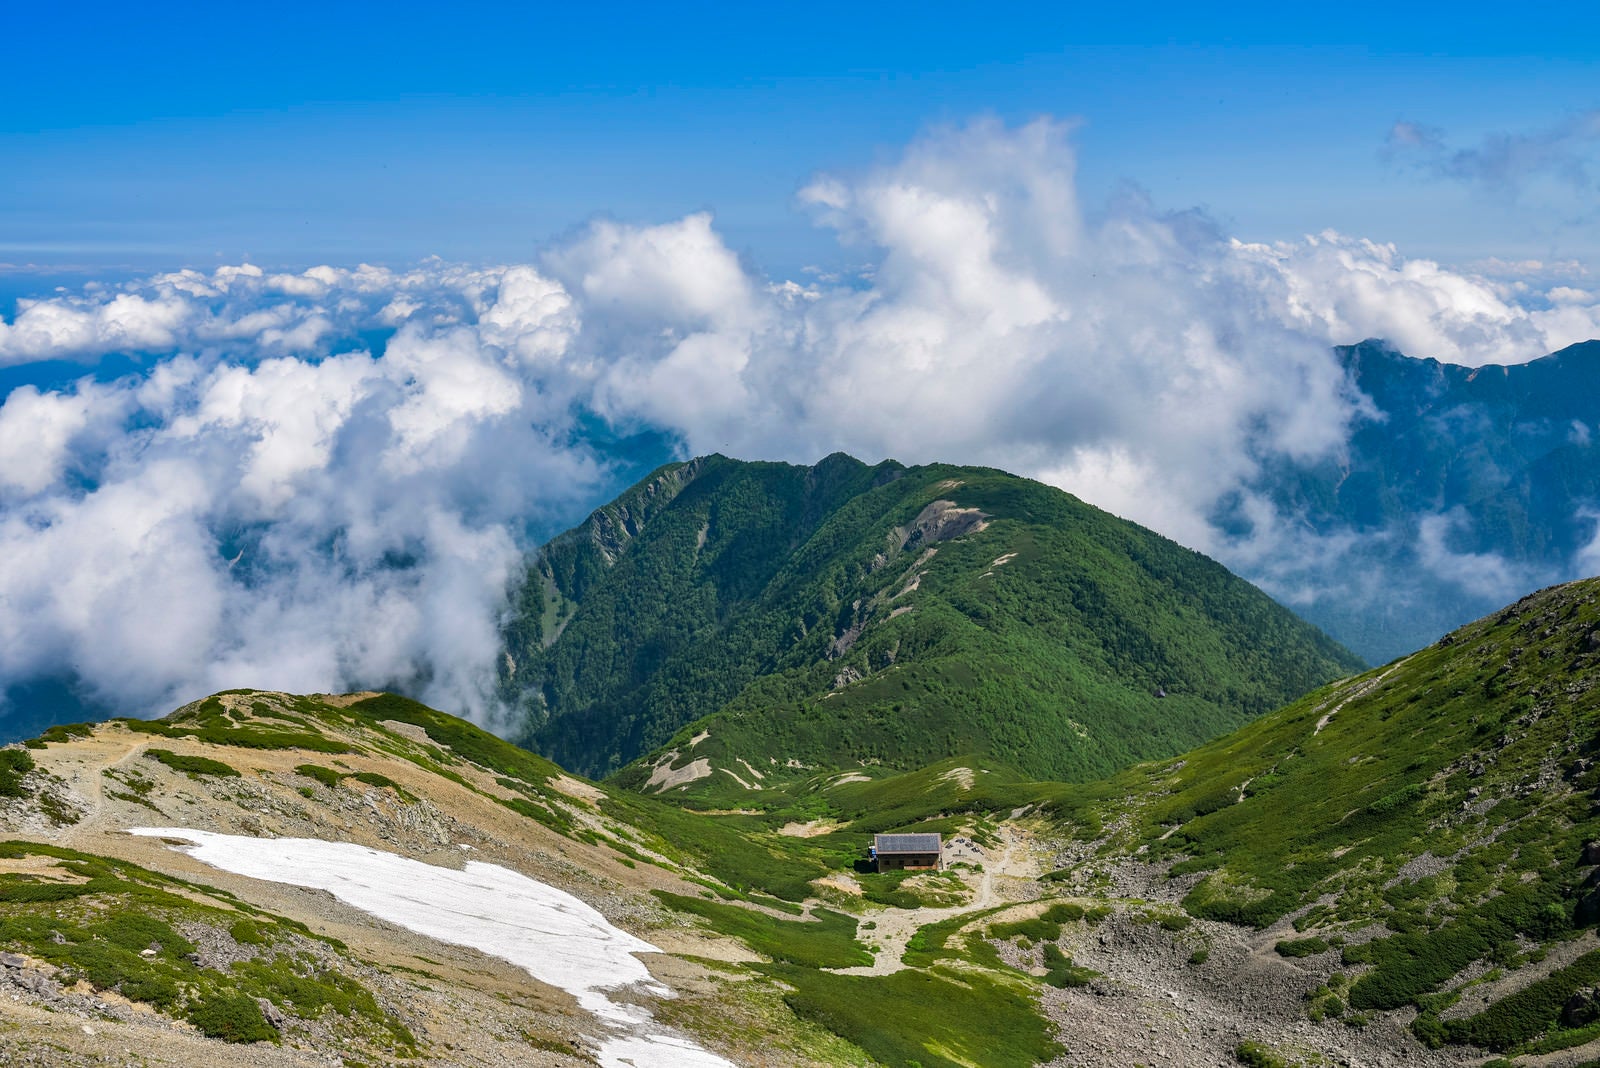 「夏らしい雲が湧き上がる南アルプス仙丈ヶ岳からの景色」の写真